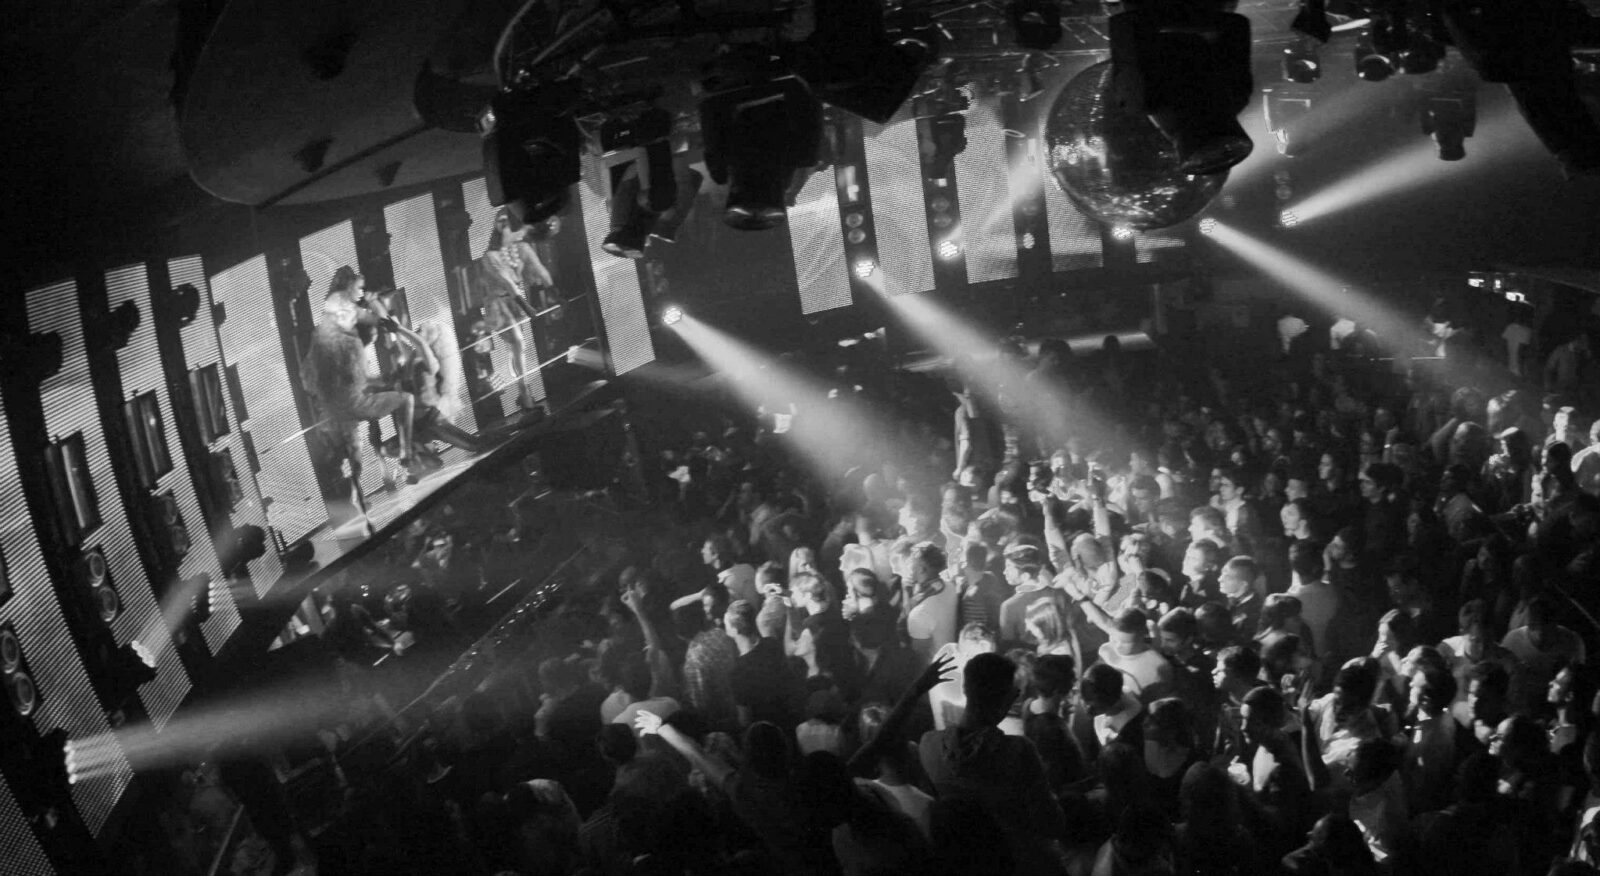 Soirée de Paul Oakenfold au Queen Club à Paris le 08-12-2012 en partenariat avec Trance In France